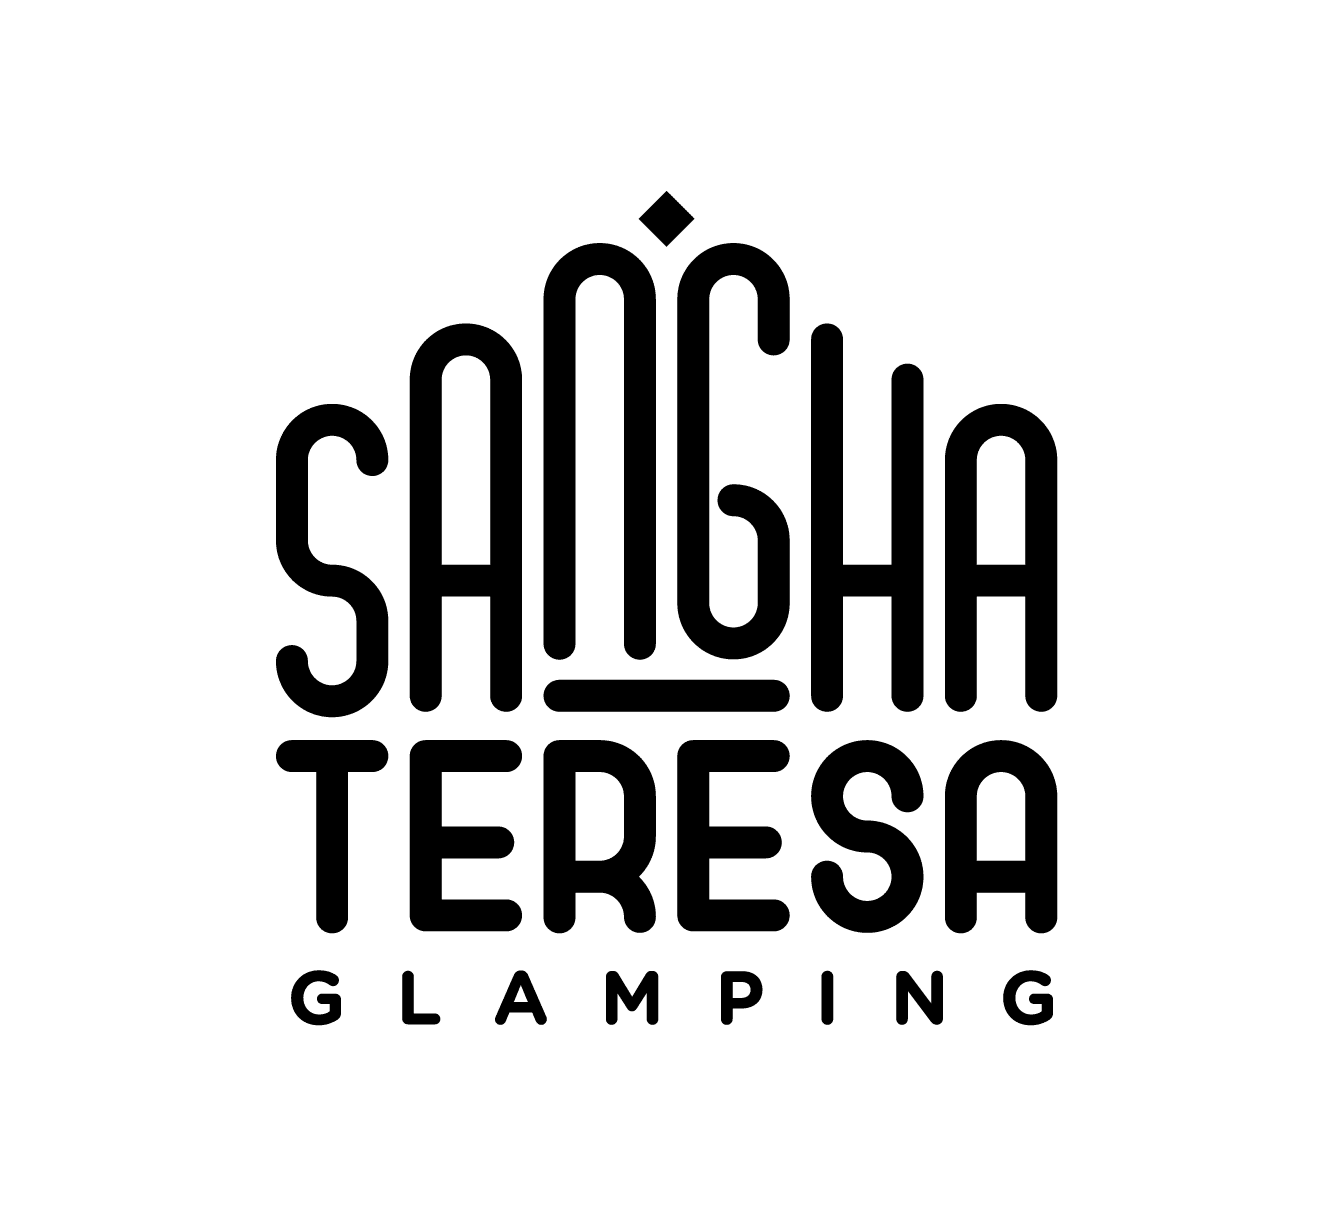 Sangha Teresa Glamping